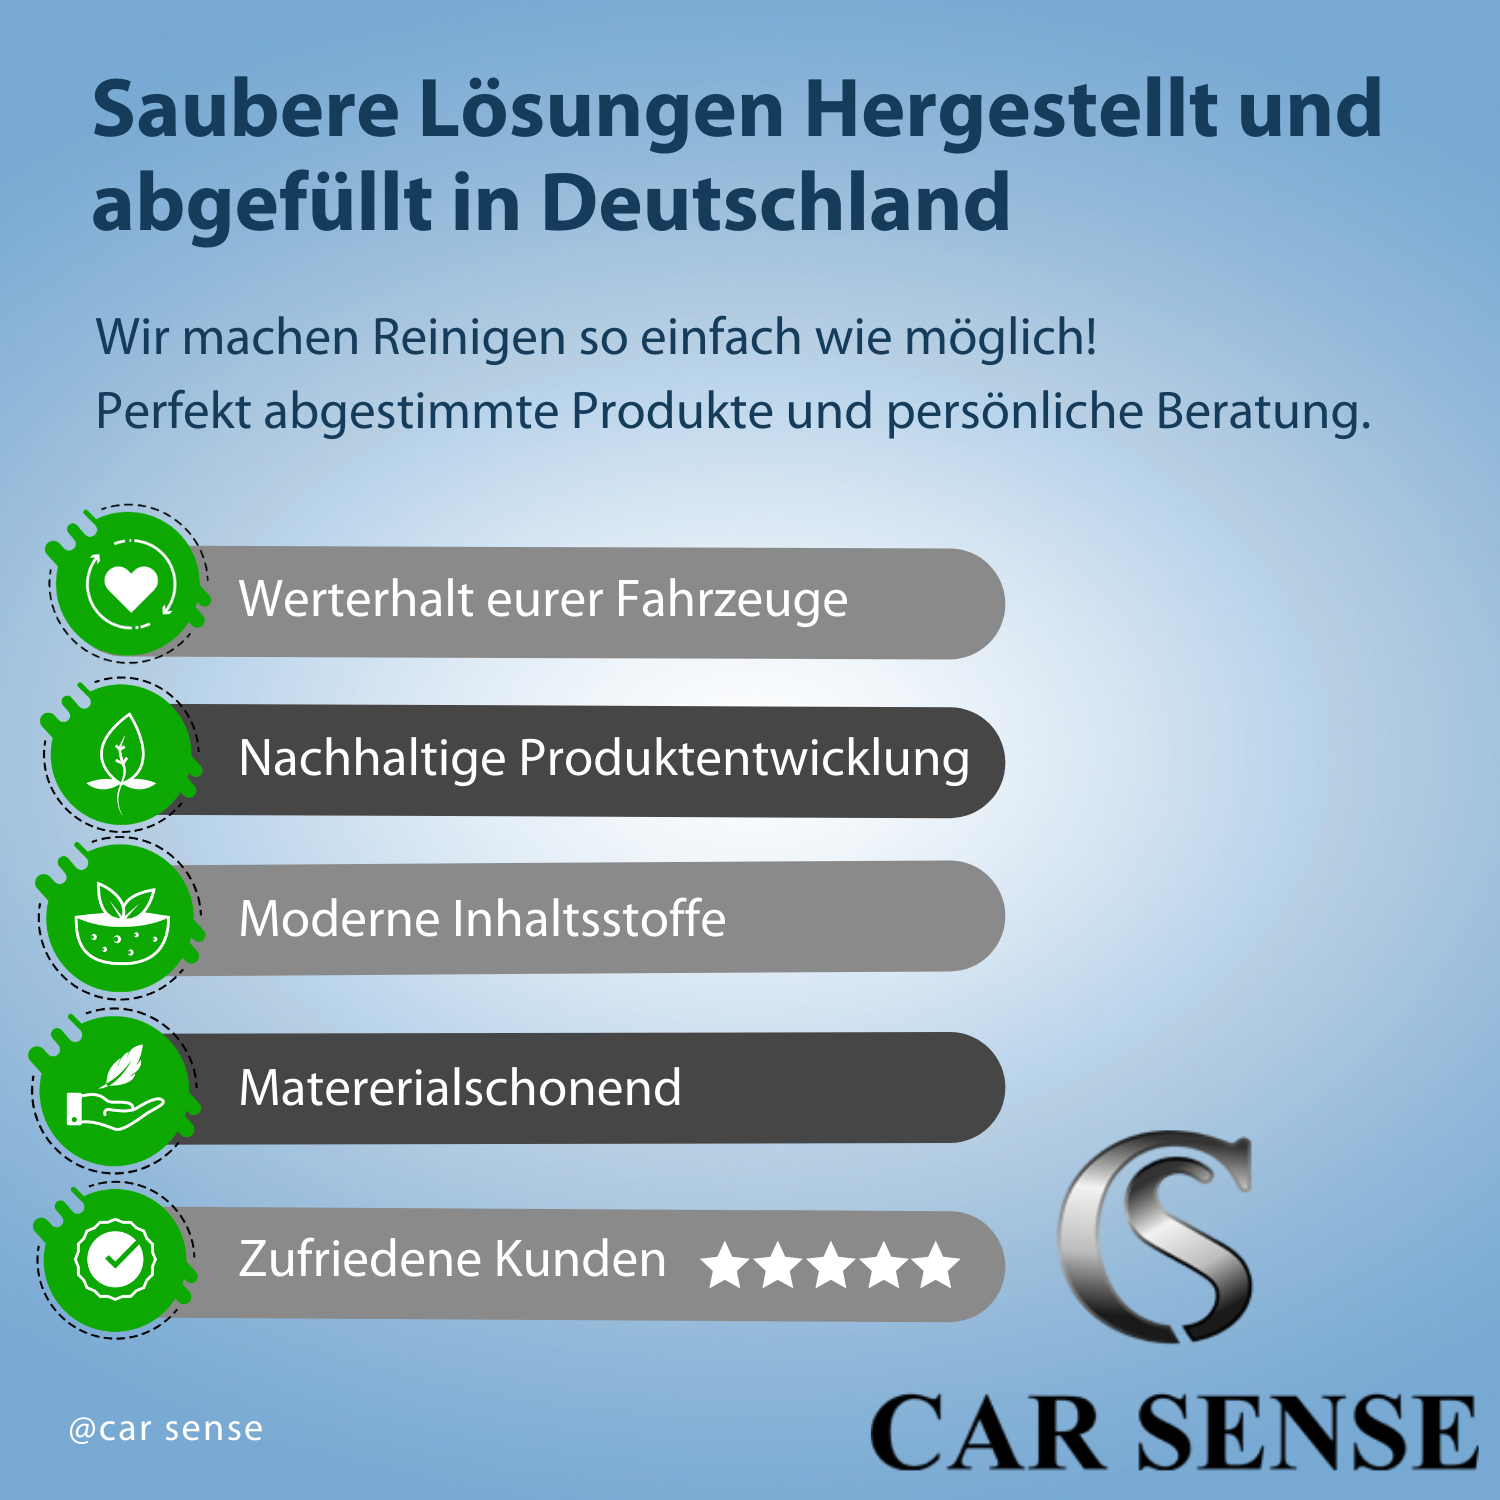 Car Sense Premium Selant Shine Premium seidenmatte Glanzversiegelung auf Polymerbasis | Für Oberflächen an Fahrzeugen | Langzeitschutz mit hohem Glanzgrad | Vielseitig anwendbar